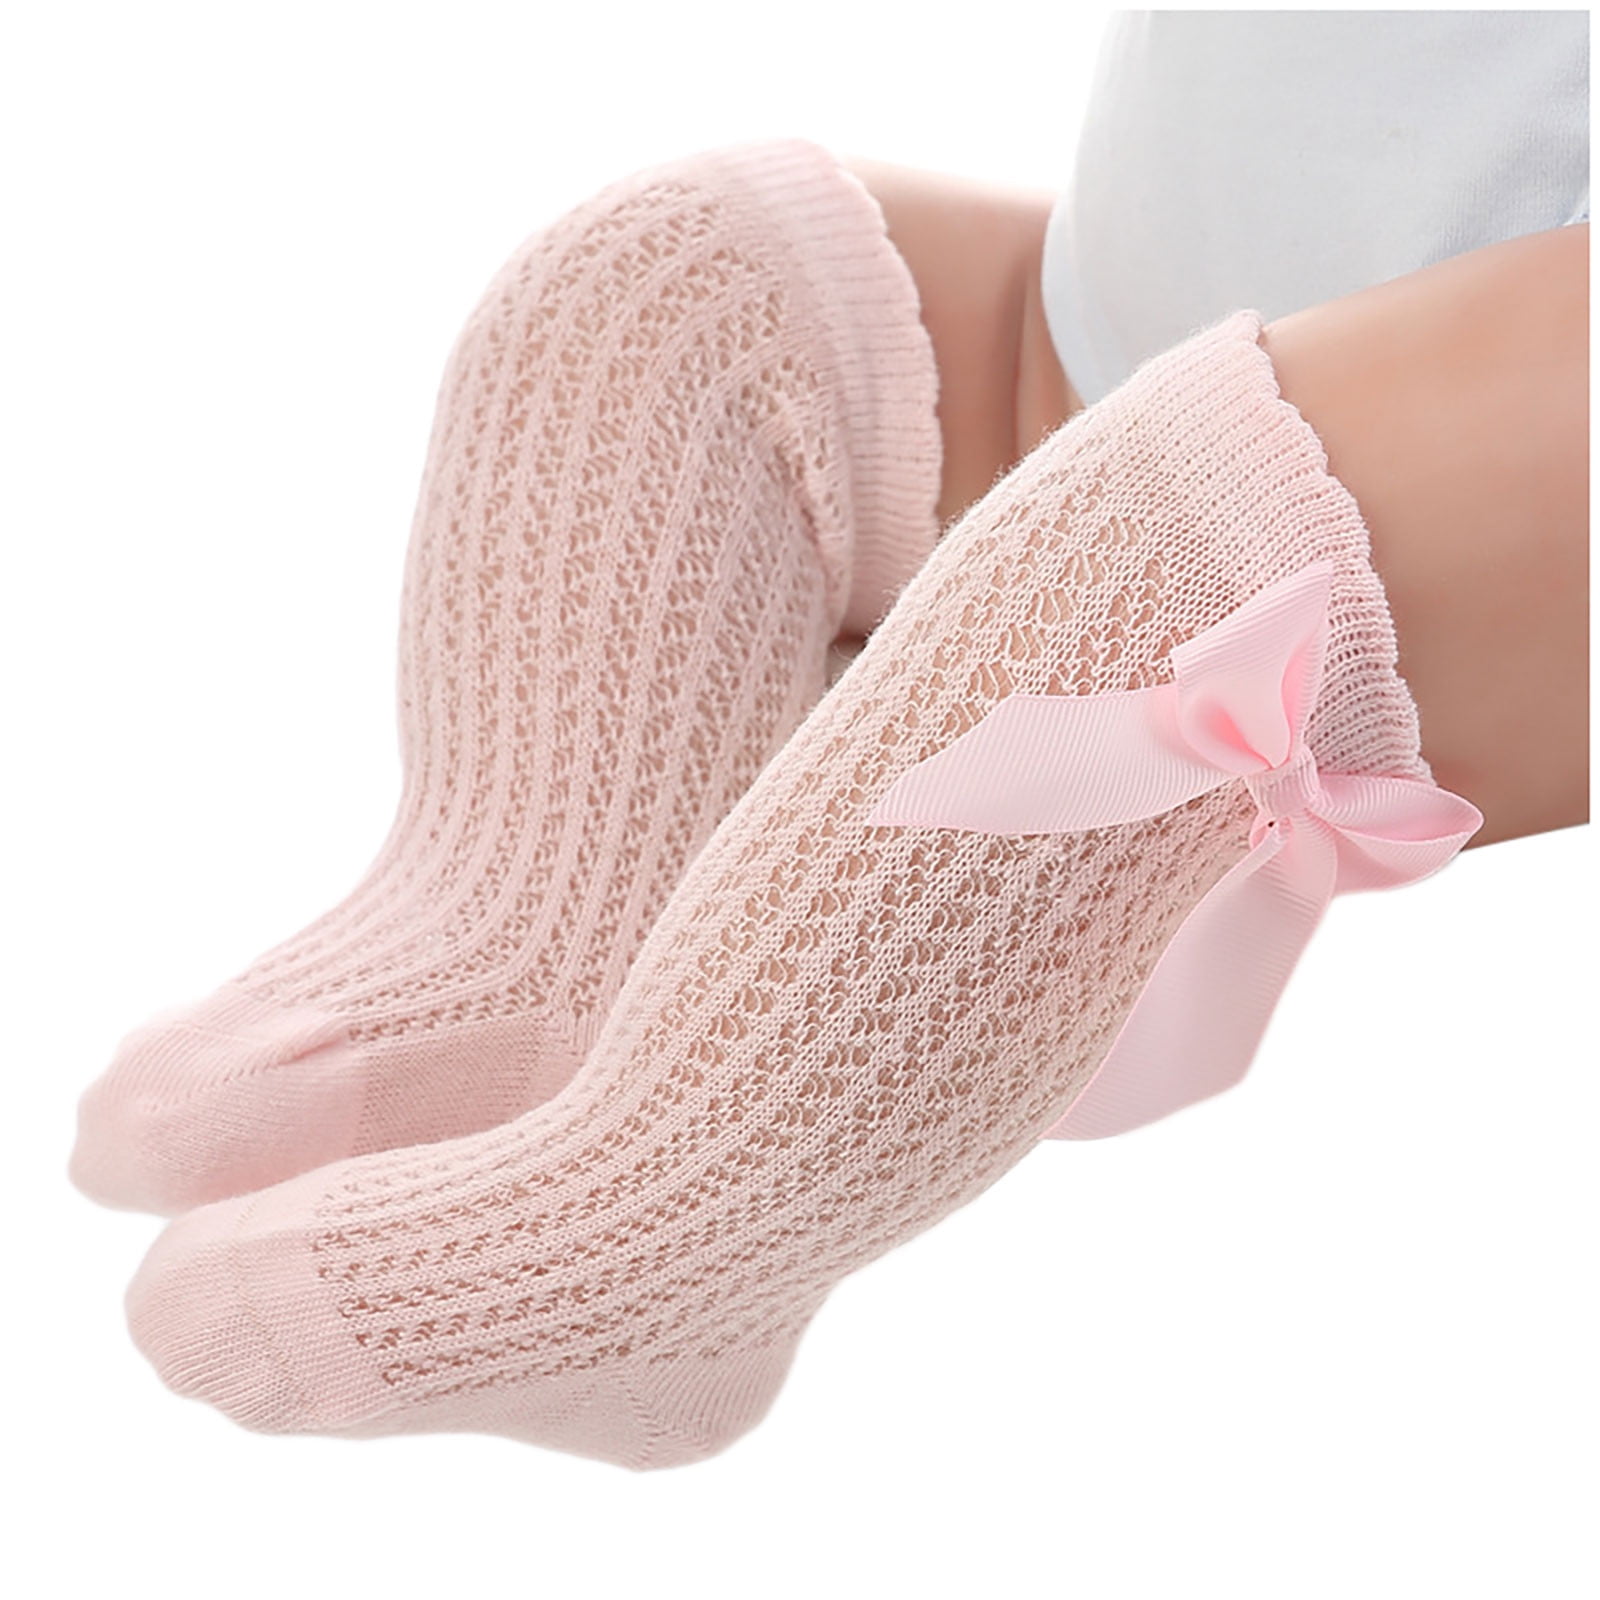 BKQCNKM Toddler Socks Baby Socks Crazy Socks for Kids Newborn Socks ...